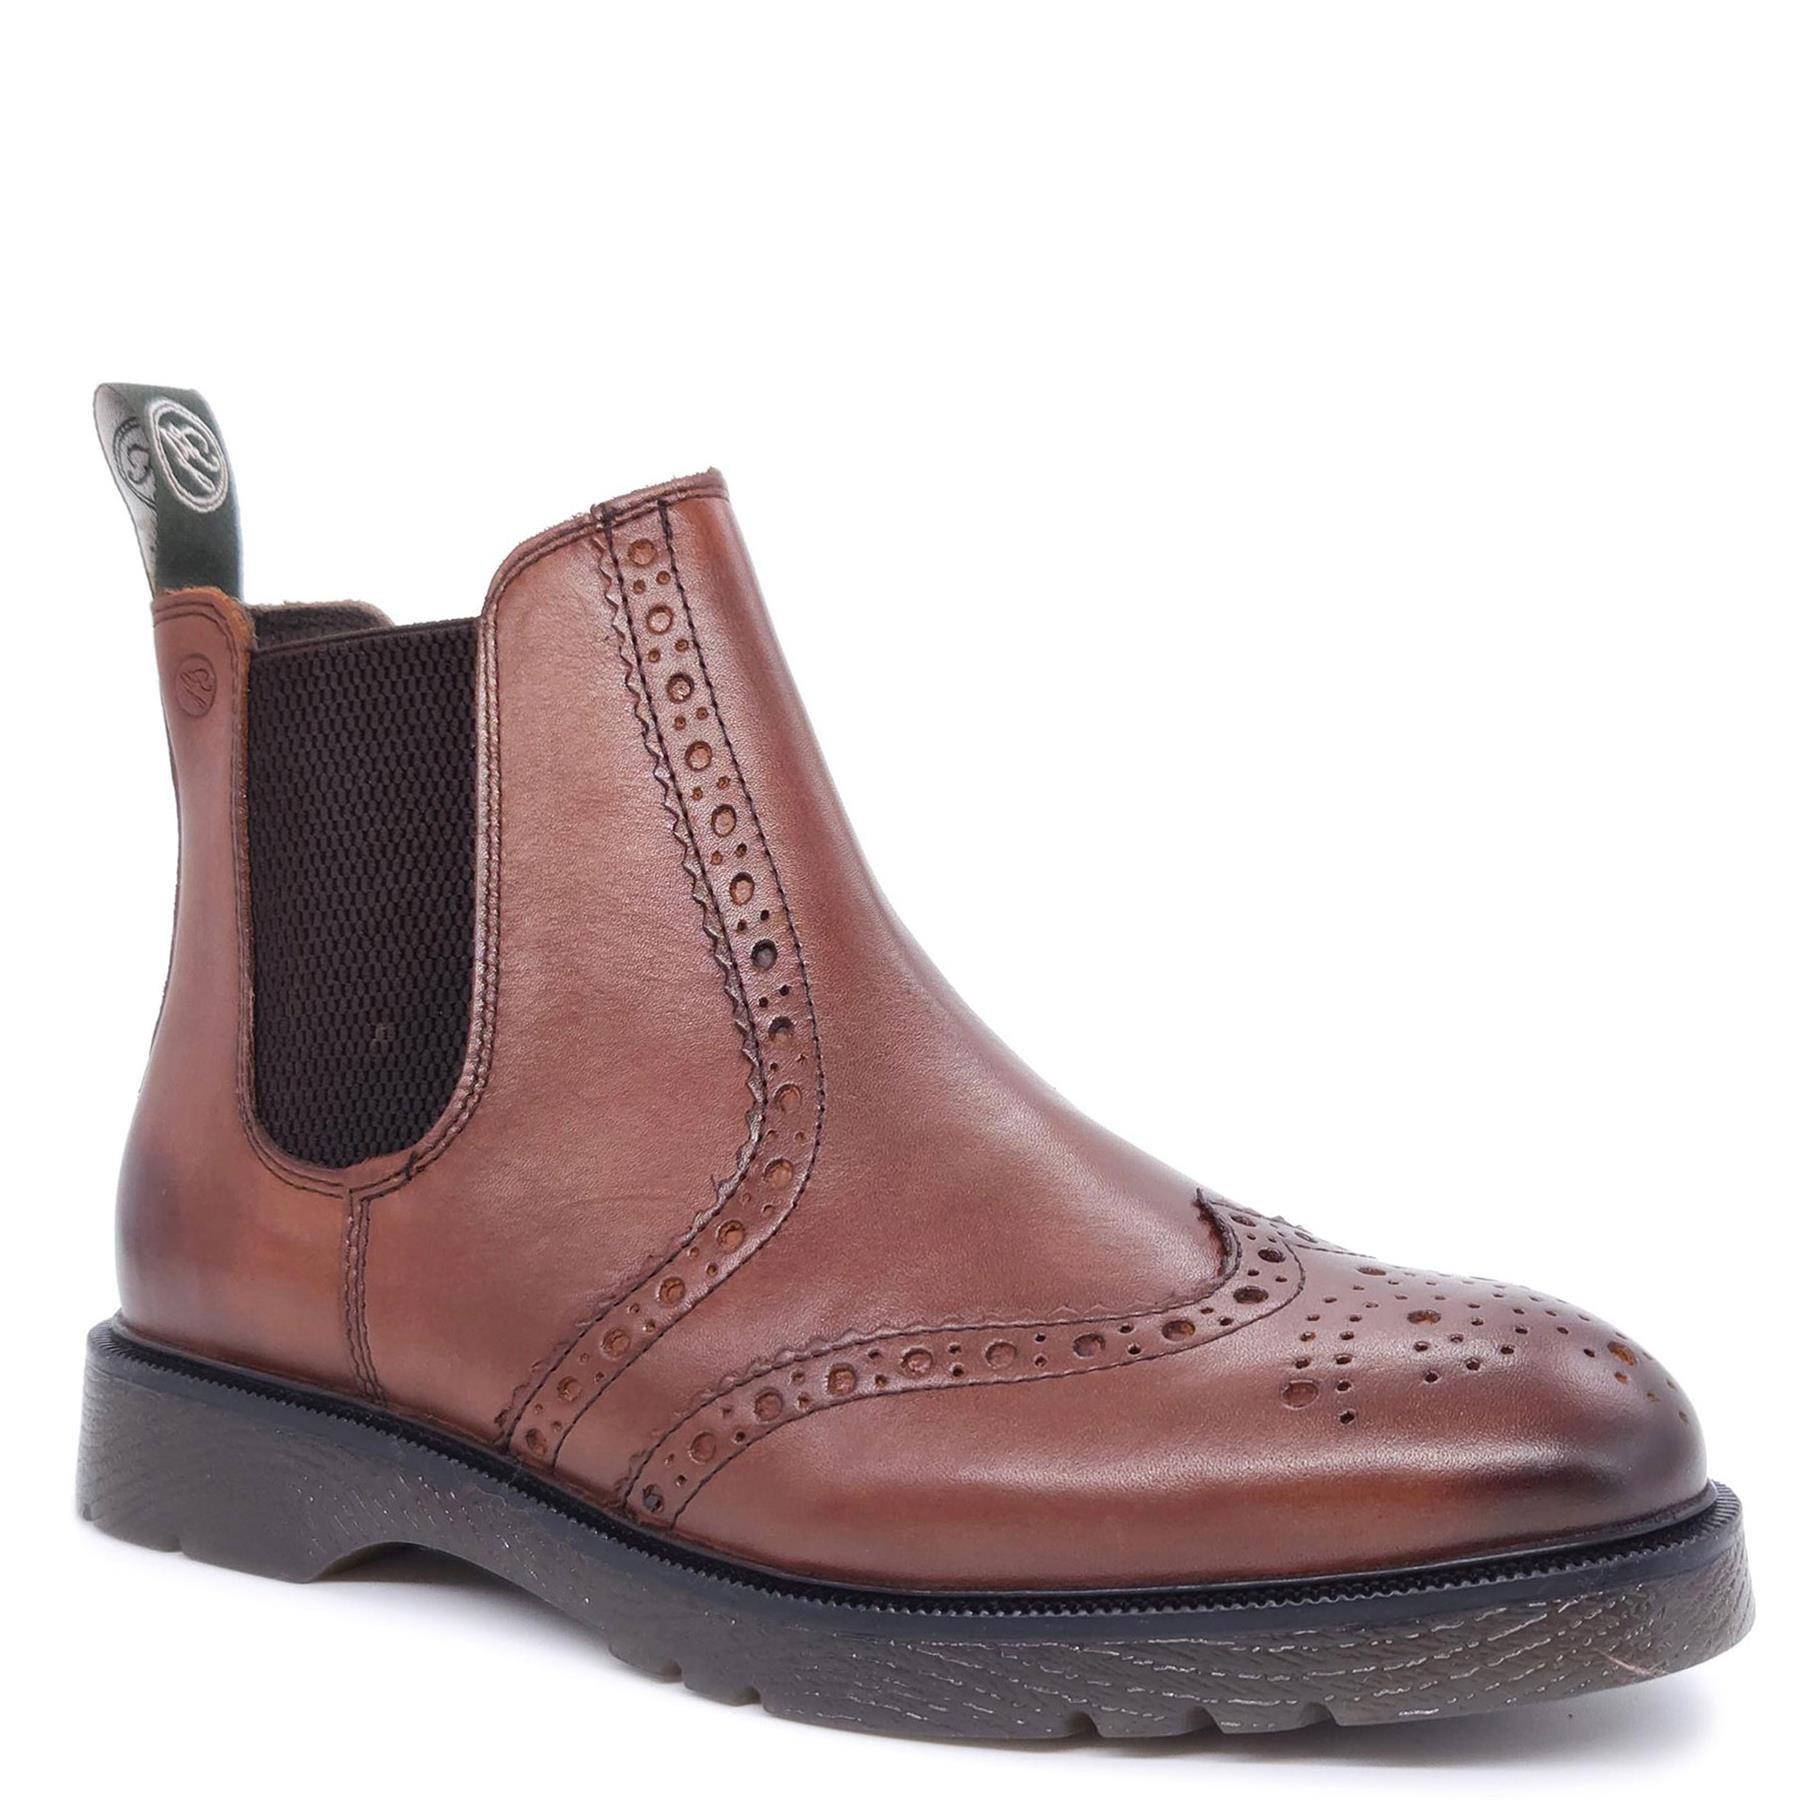 Кожаные ботинки челси с эффектом броги Warkton Frank James, коричневый цена и фото